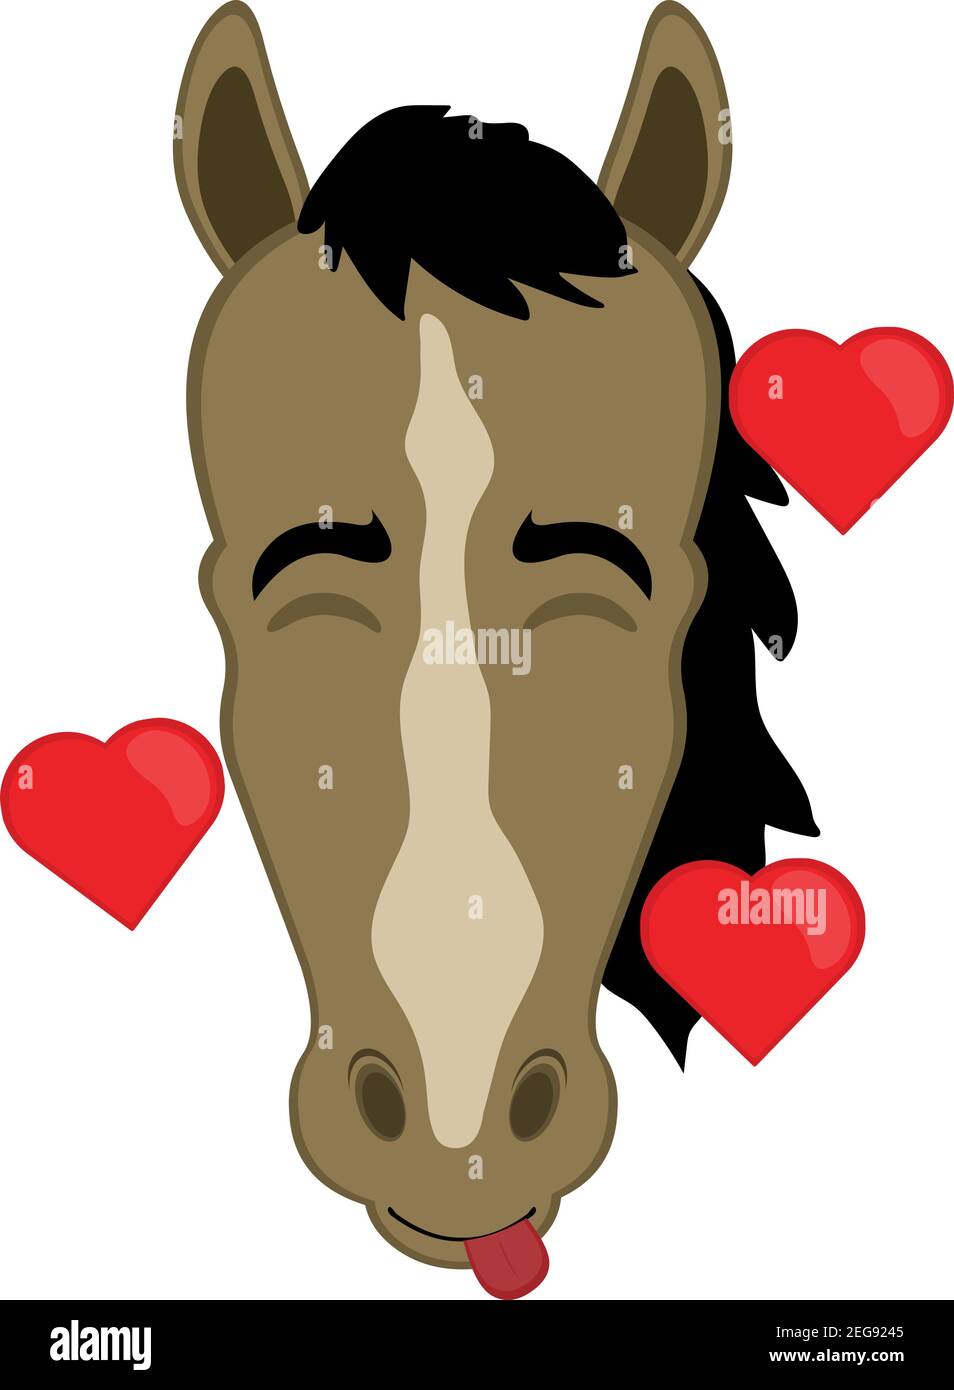 Vecteur émoticône illustration dessin animé de la tête d'un cheval avec une expression de joie, dans l'amour entouré de coeurs Illustration de Vecteur